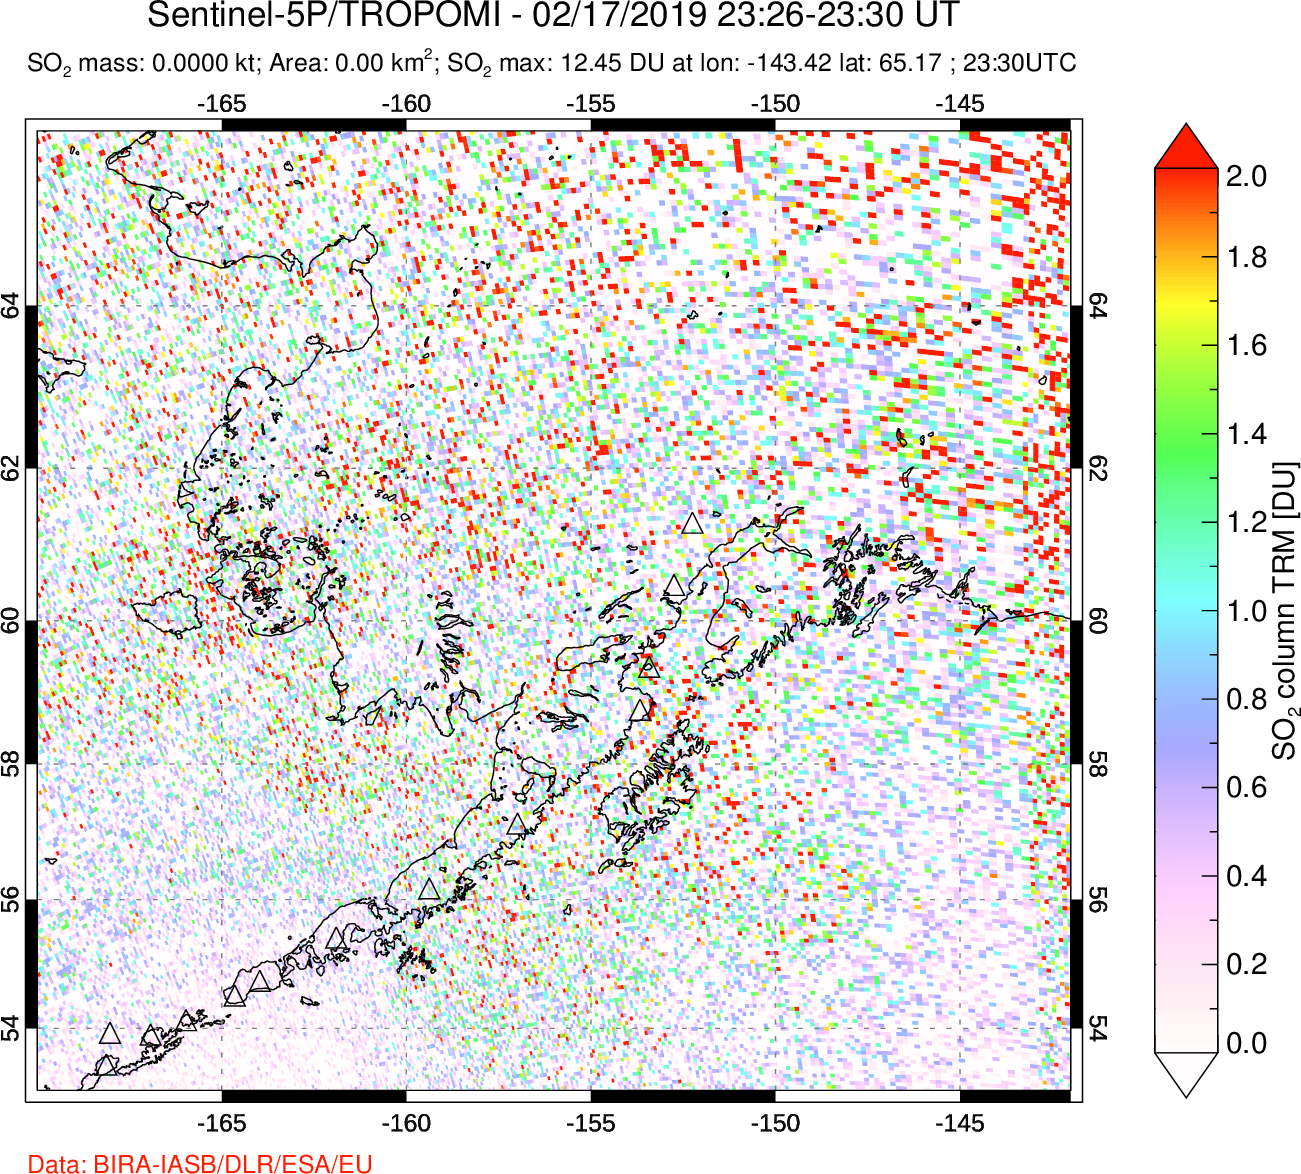 A sulfur dioxide image over Alaska, USA on Feb 17, 2019.